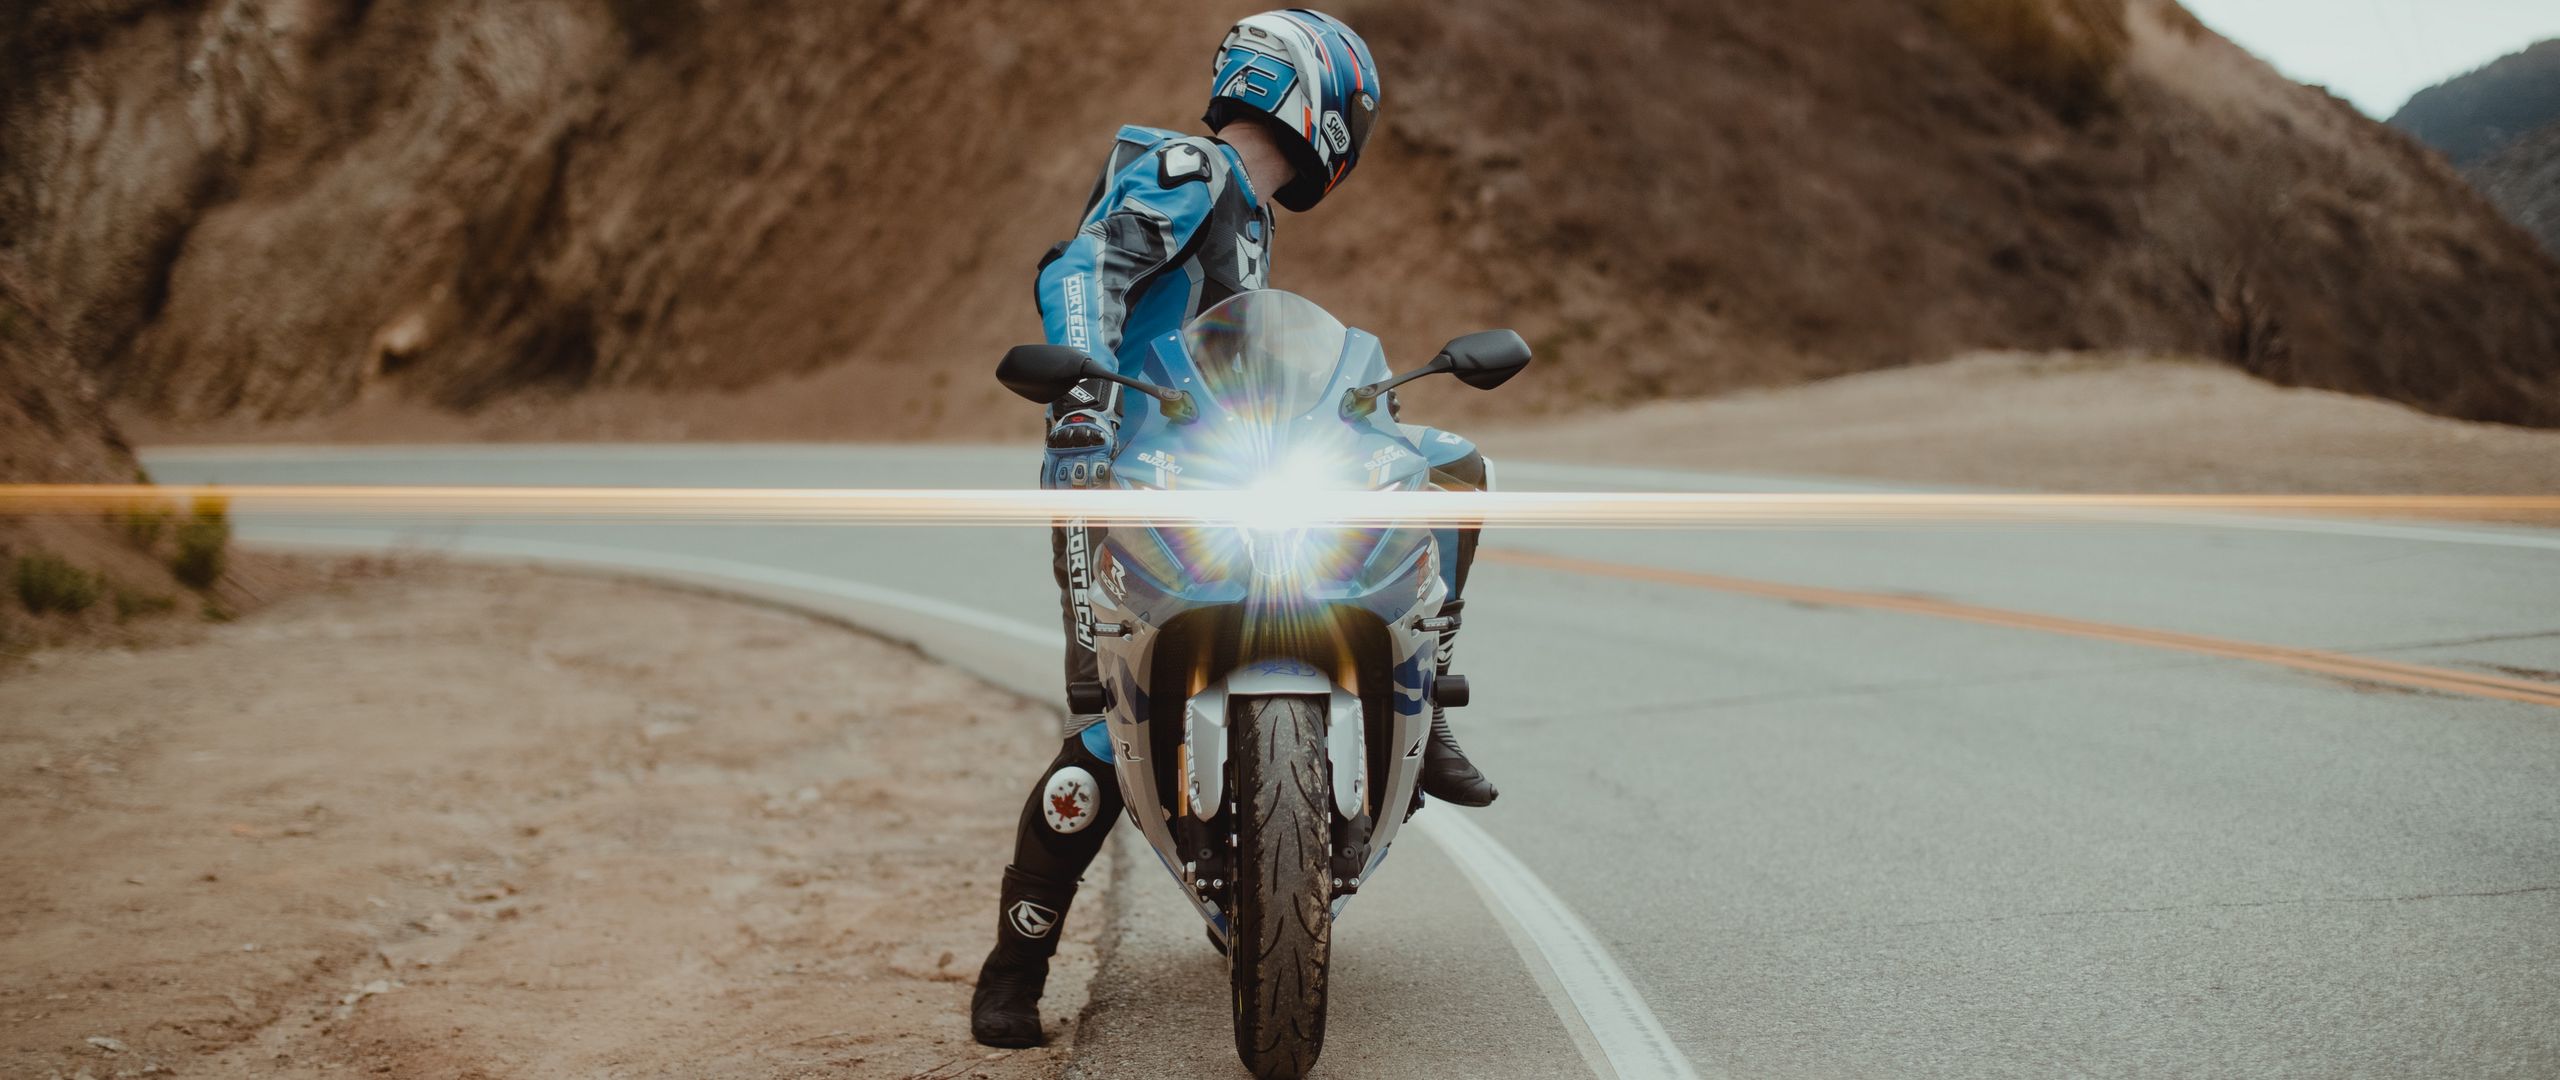 2560x1080 Wallpaper motorcycle, motorcyclist, bike, sport bike, light